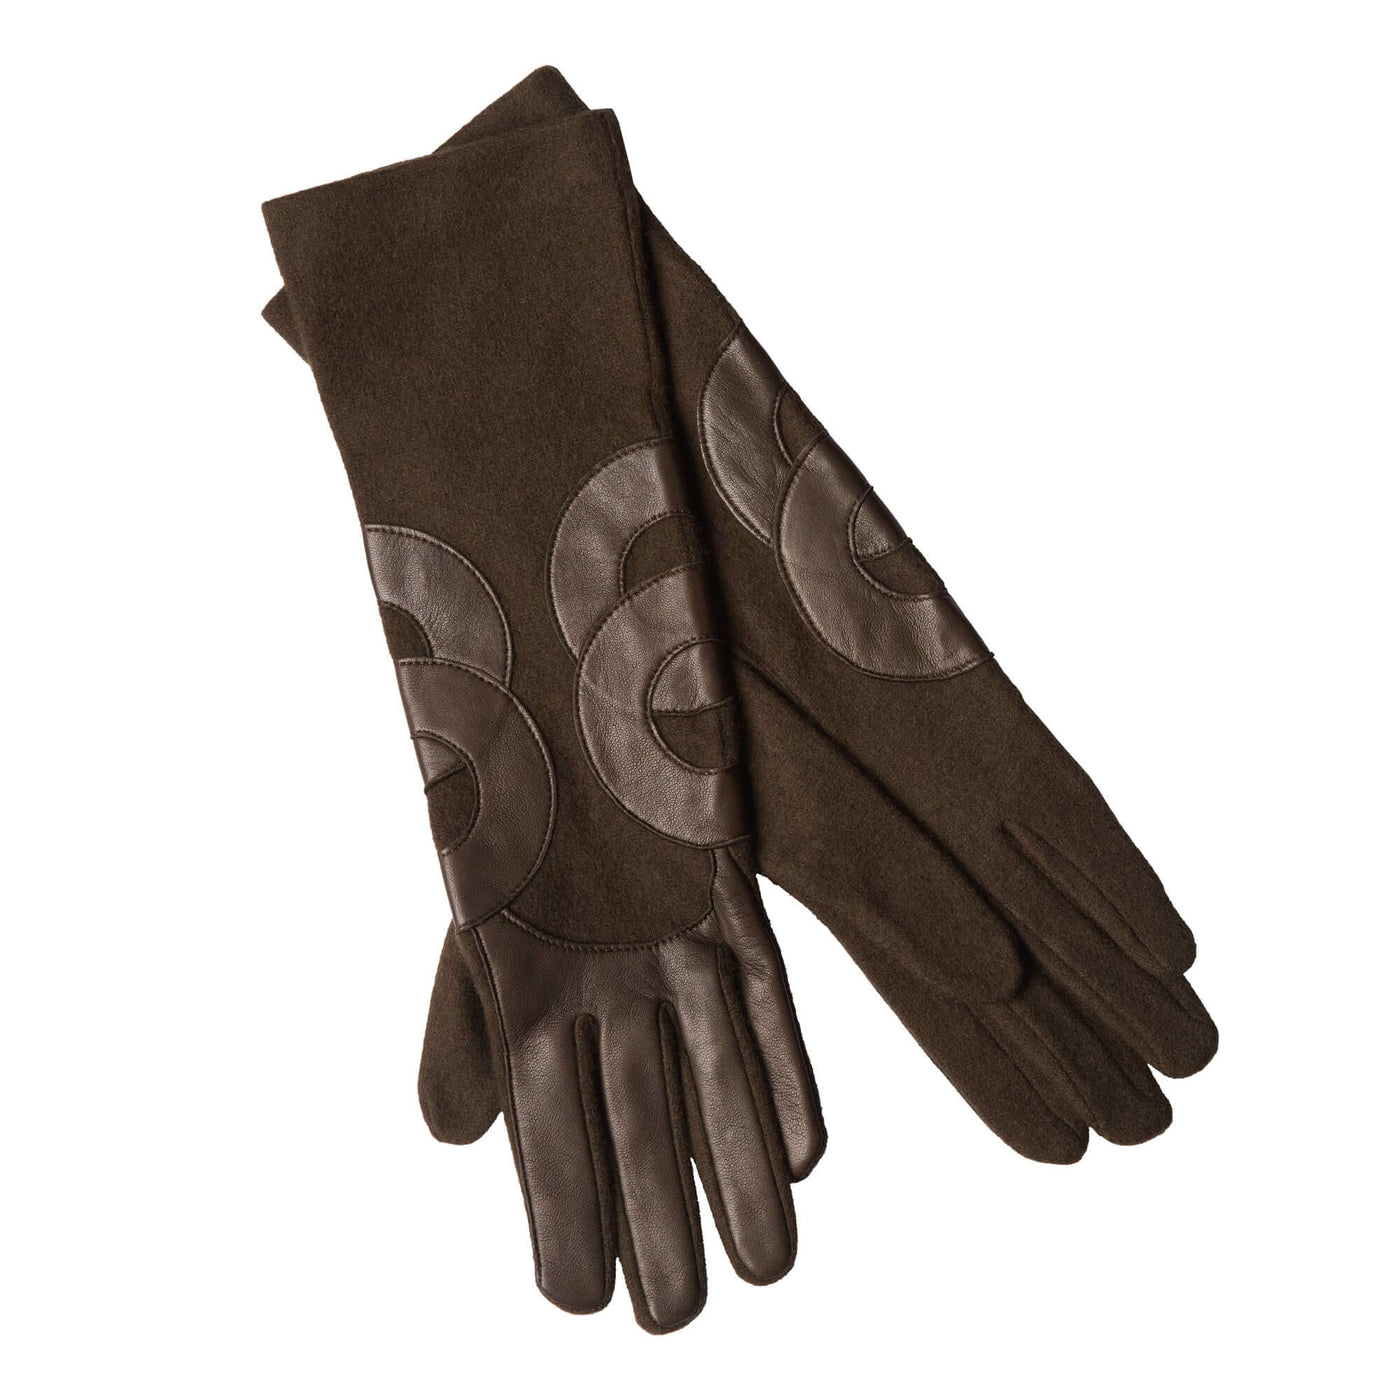 Agnelle 814 Gloves - Agnelle - Ileana Makri store